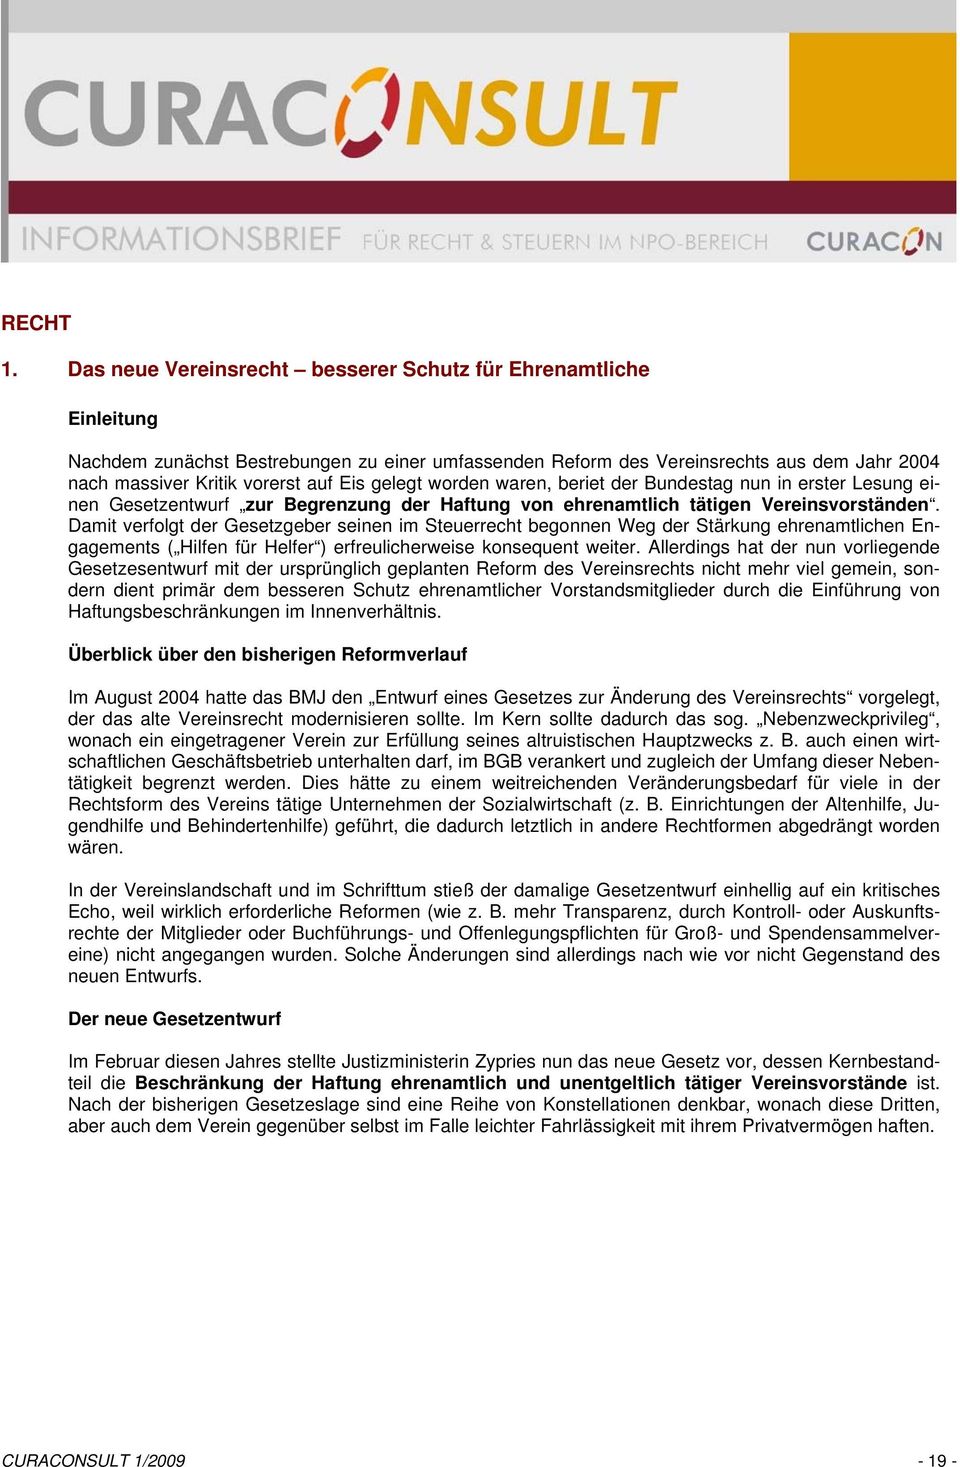 gelegt worden waren, beriet der Bundestag nun in erster Lesung einen Gesetzentwurf zur Begrenzung der Haftung von ehrenamtlich tätigen Vereinsvorständen.